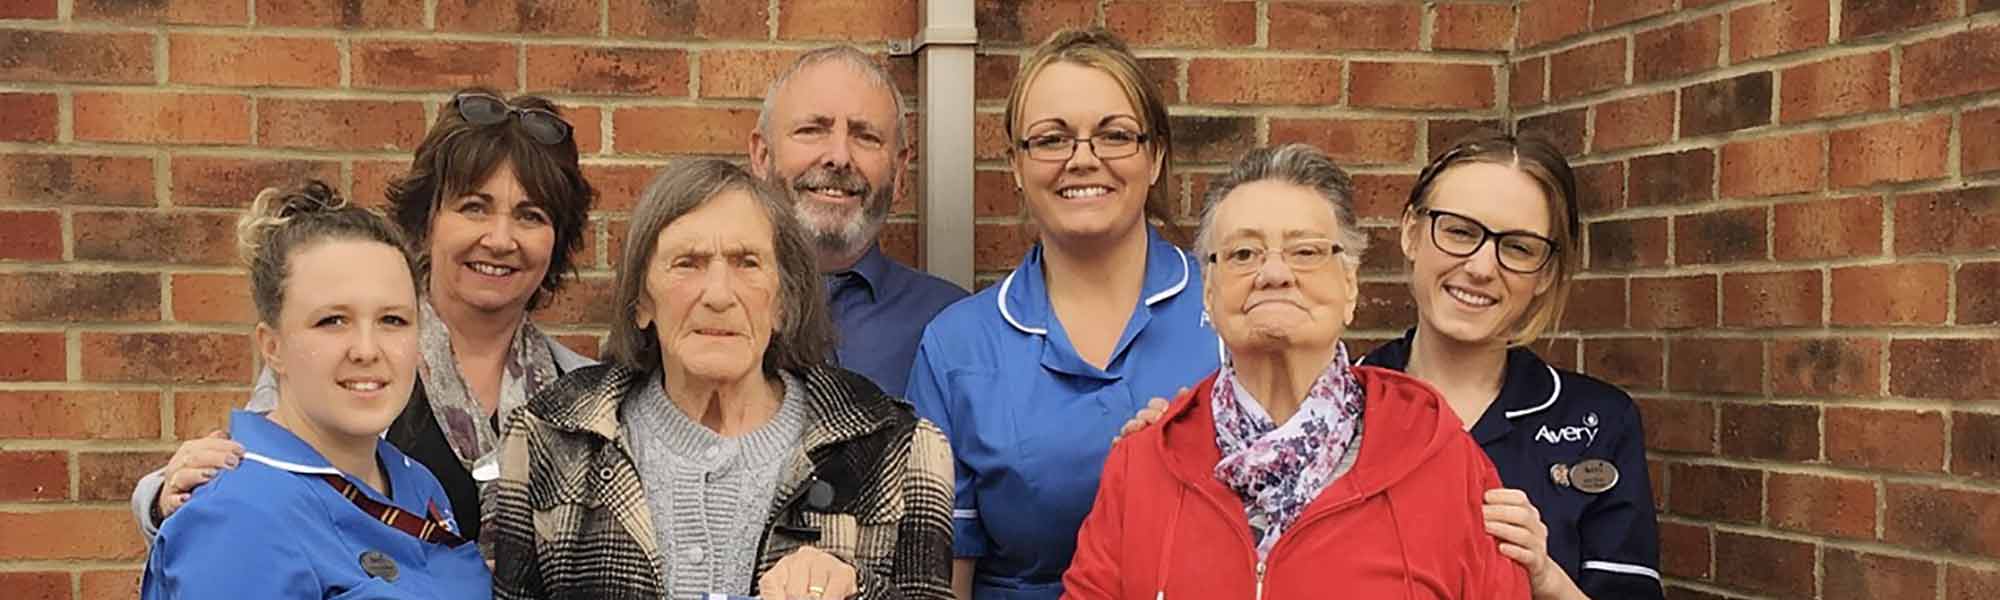 Highcliffe Healthwatch Report 2019 staff success